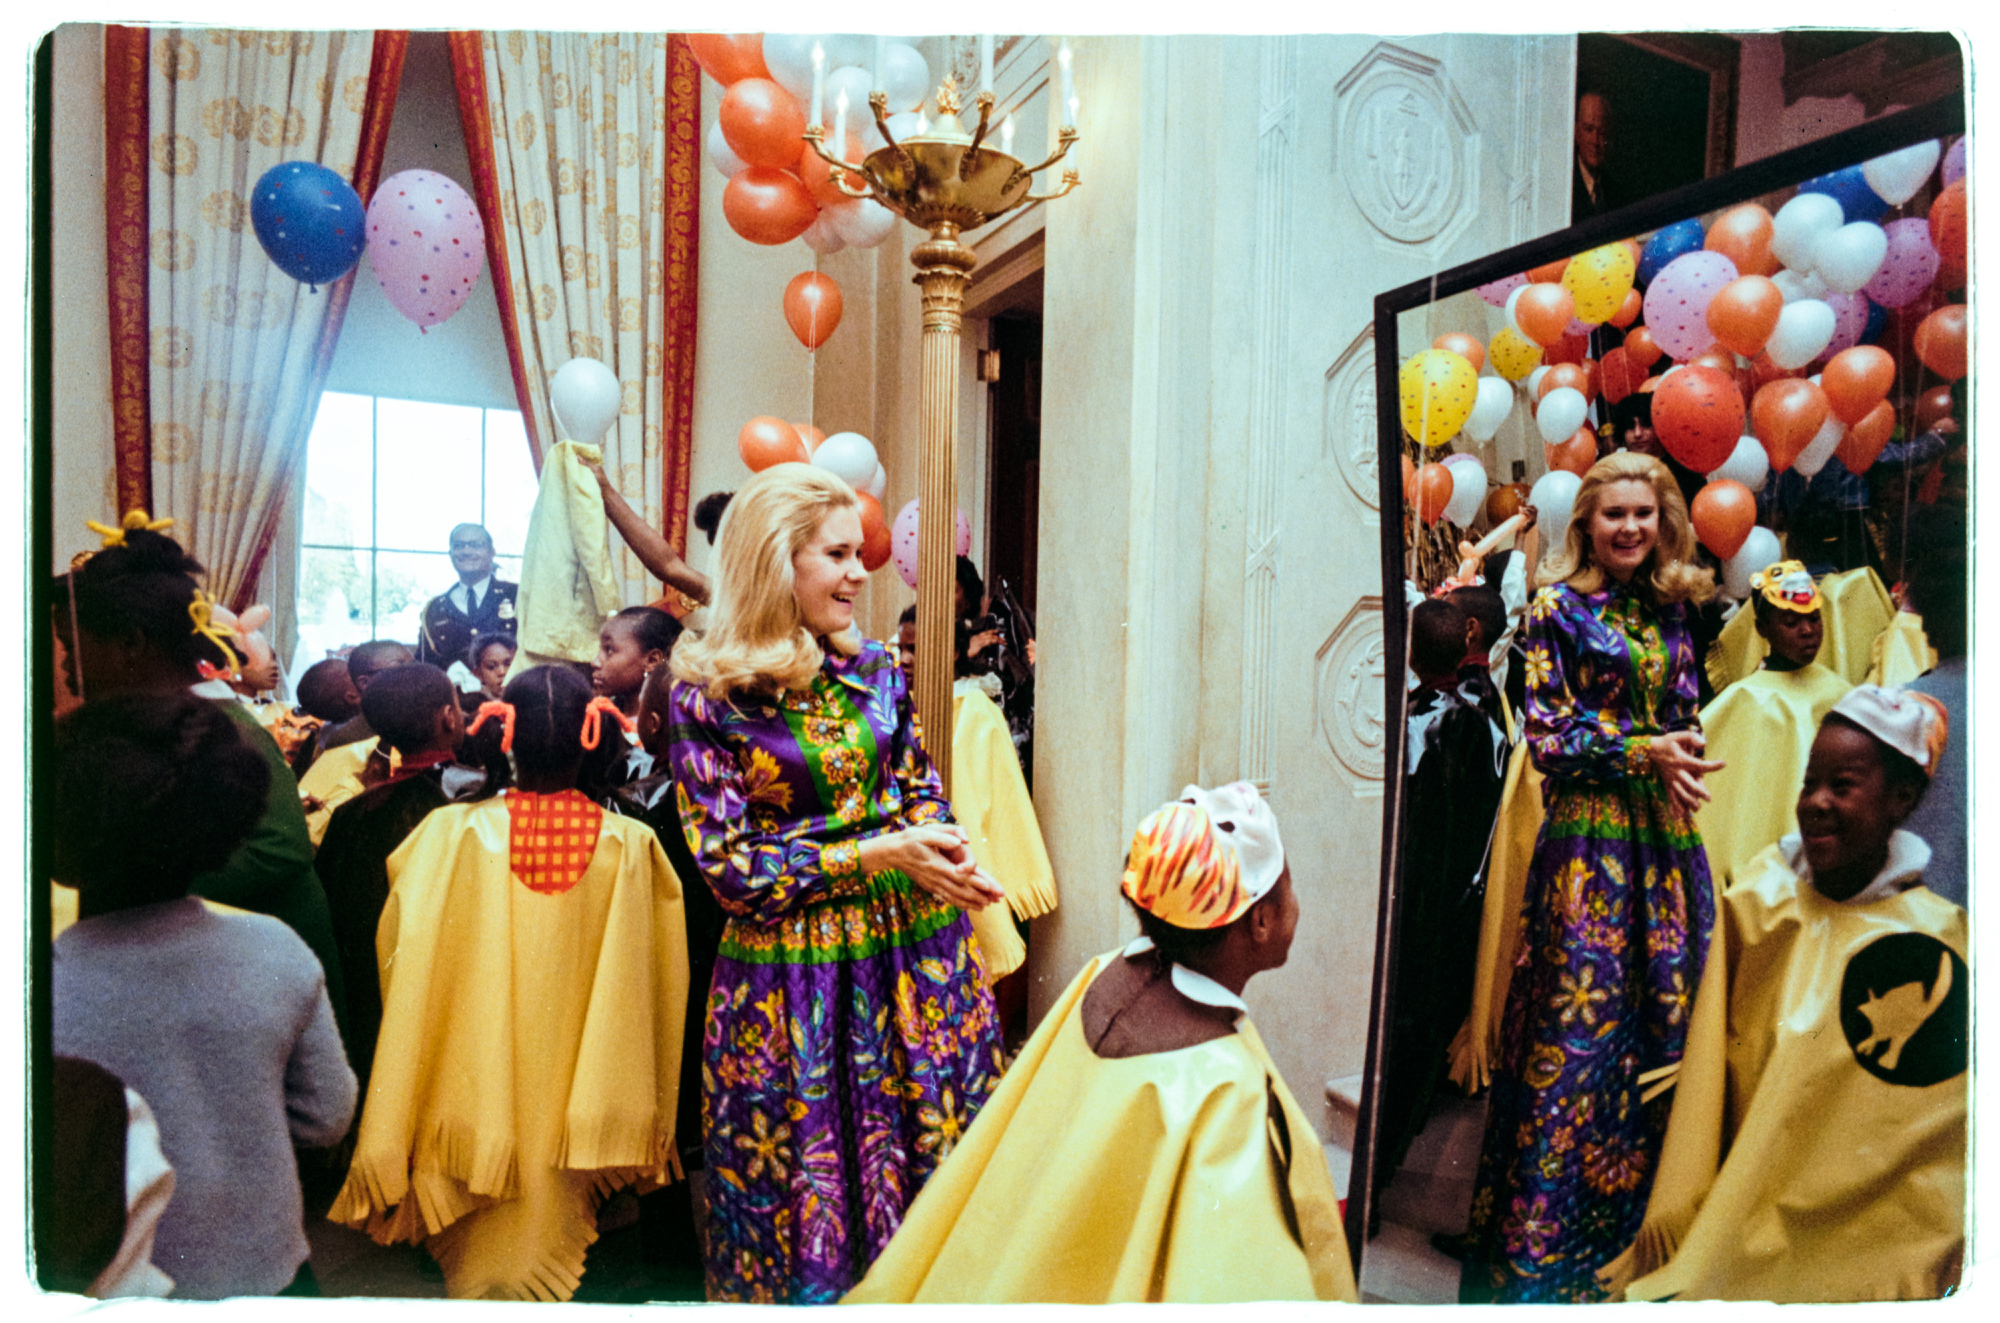 Con gái lớn của Tổng thống Richard M. Nixon, Tricia Nixon, mỉm cười khi một đứa trẻ mặc trang phục nhìn chằm chằm vào chiếc gương ngôi nhà vui nhộn trong Sảnh vào tại lễ hội hóa trang Halloween của Nhà Trắng. Sự kiện được tổ chức cho trẻ em địa phương ở khu vực Washington, DC.